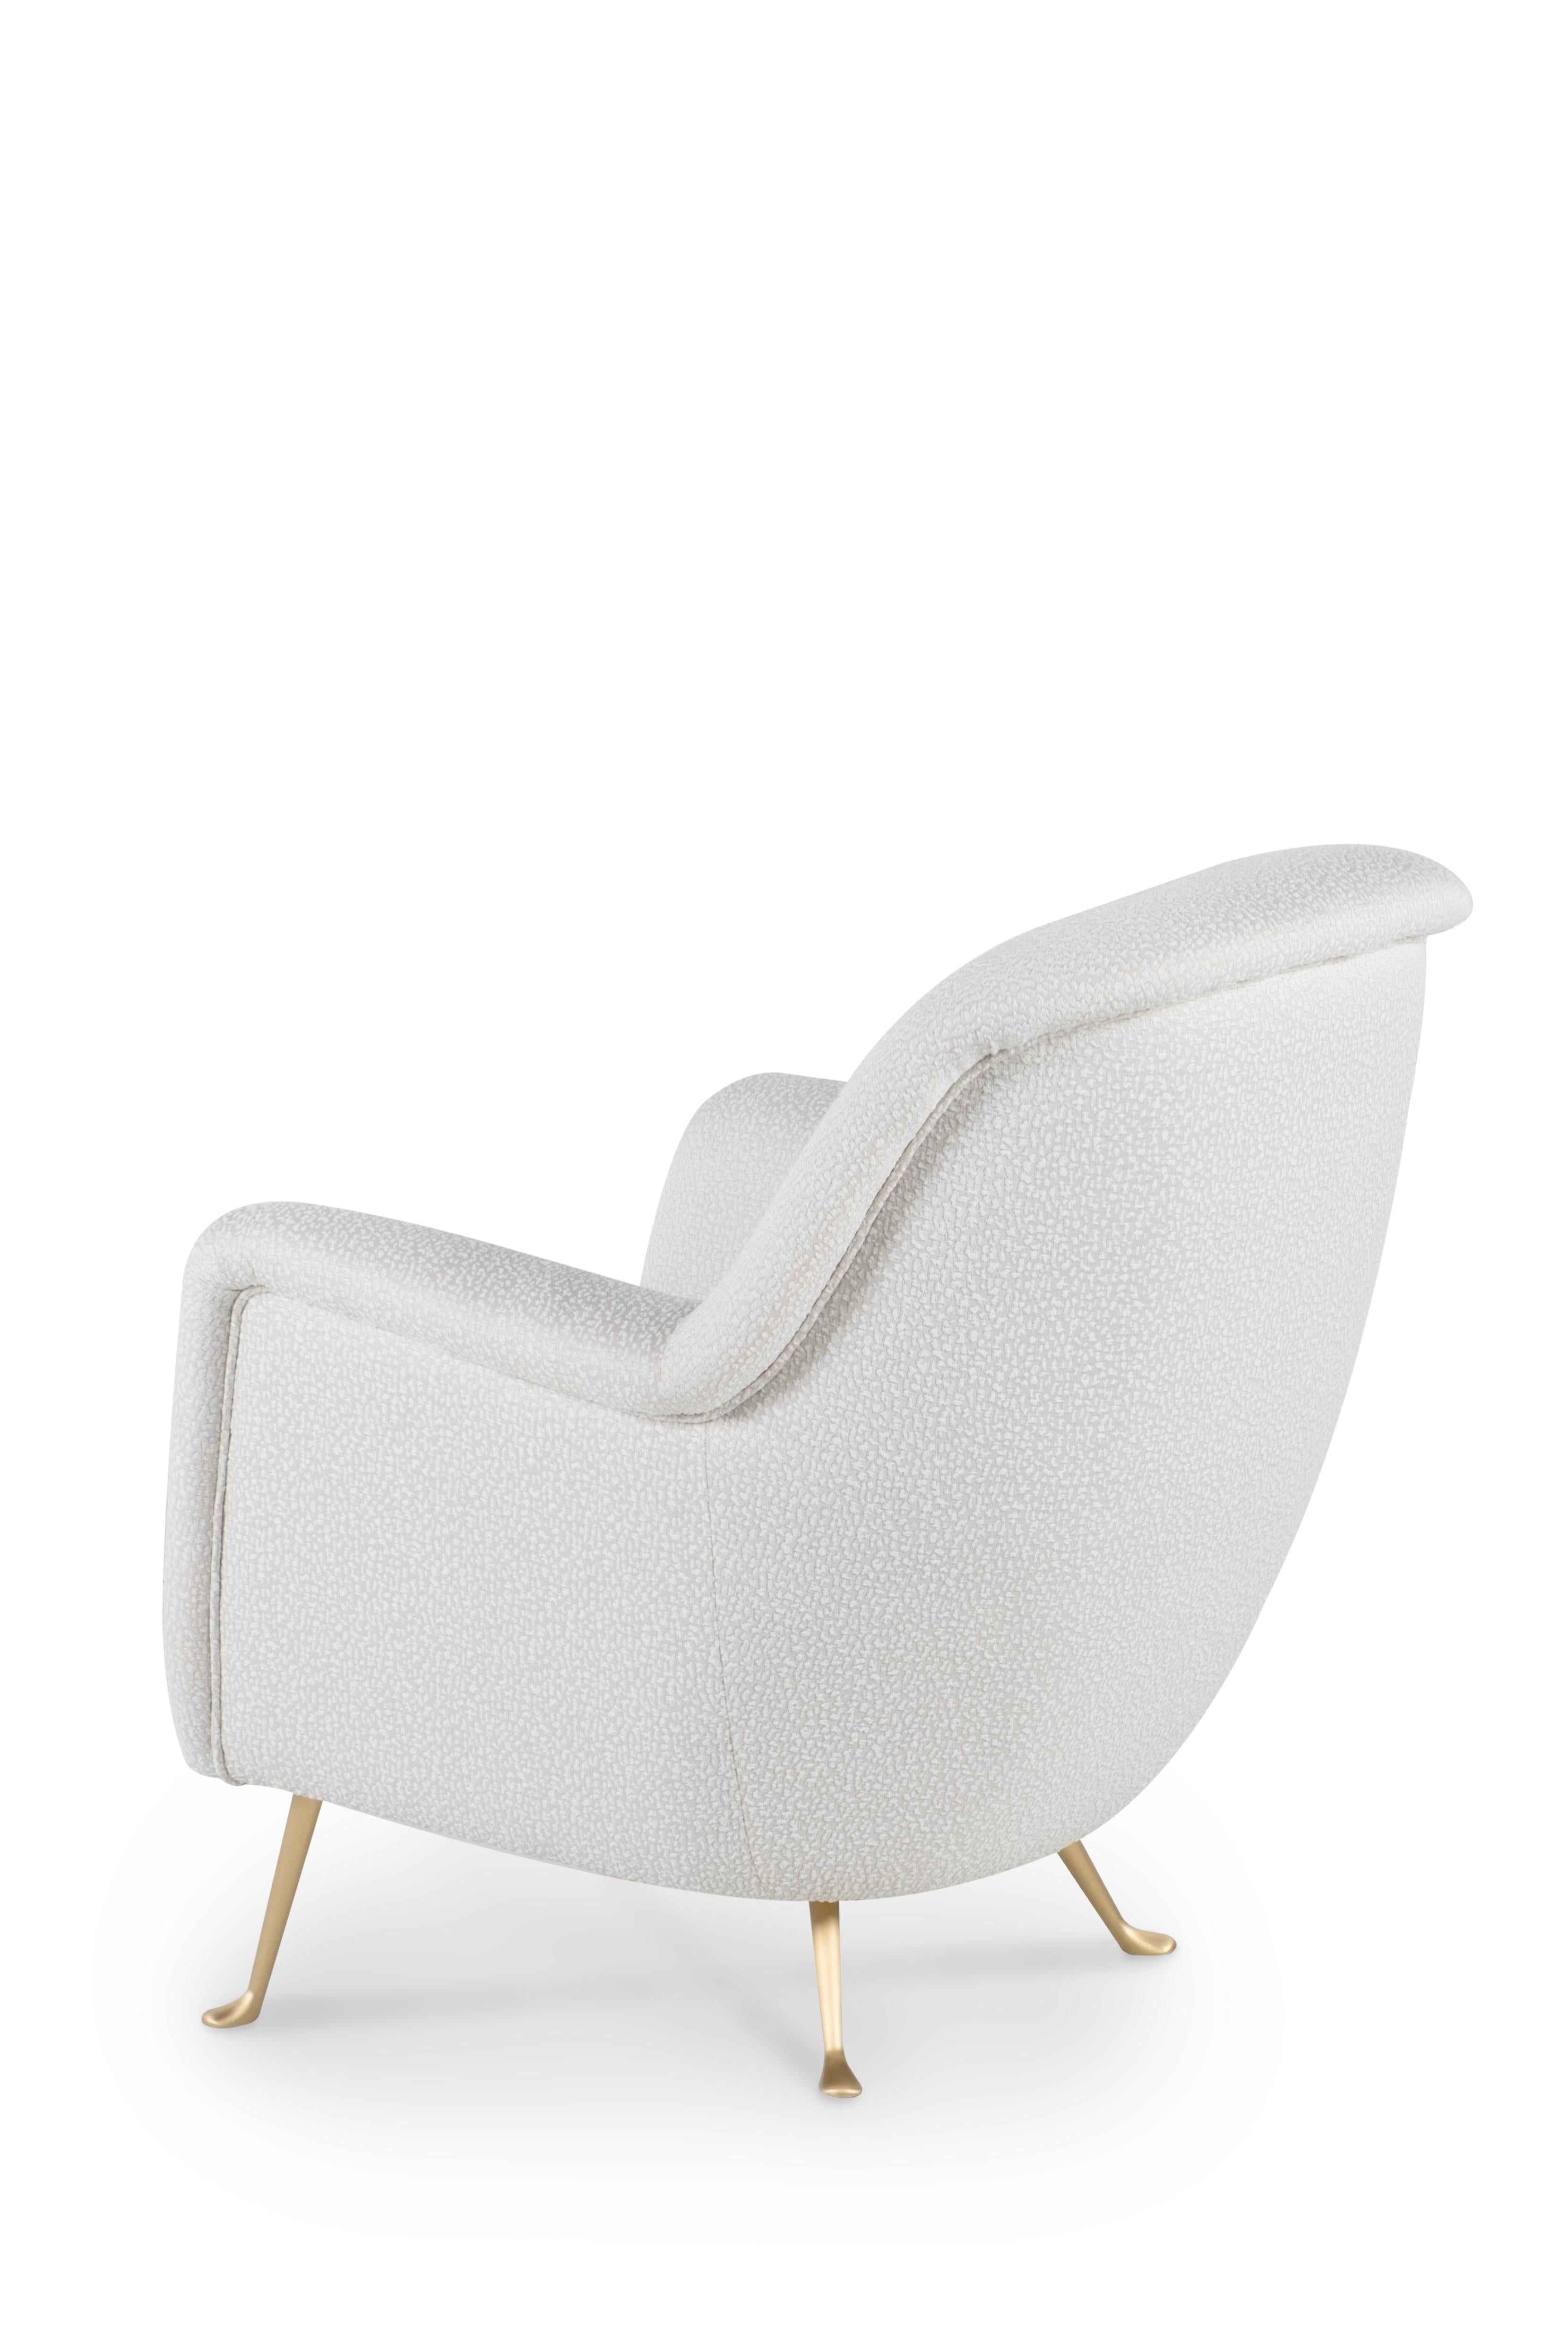 Collectible Vintage italienischen Sessel anonymen Designer in den 1960er Jahren.

Dieses ikonische Designerstück wurde komplett restauriert, von der Zarge über die speziellen Messingbeine bis hin zu einer komplett neuen Polsterung. Wiederherstellung